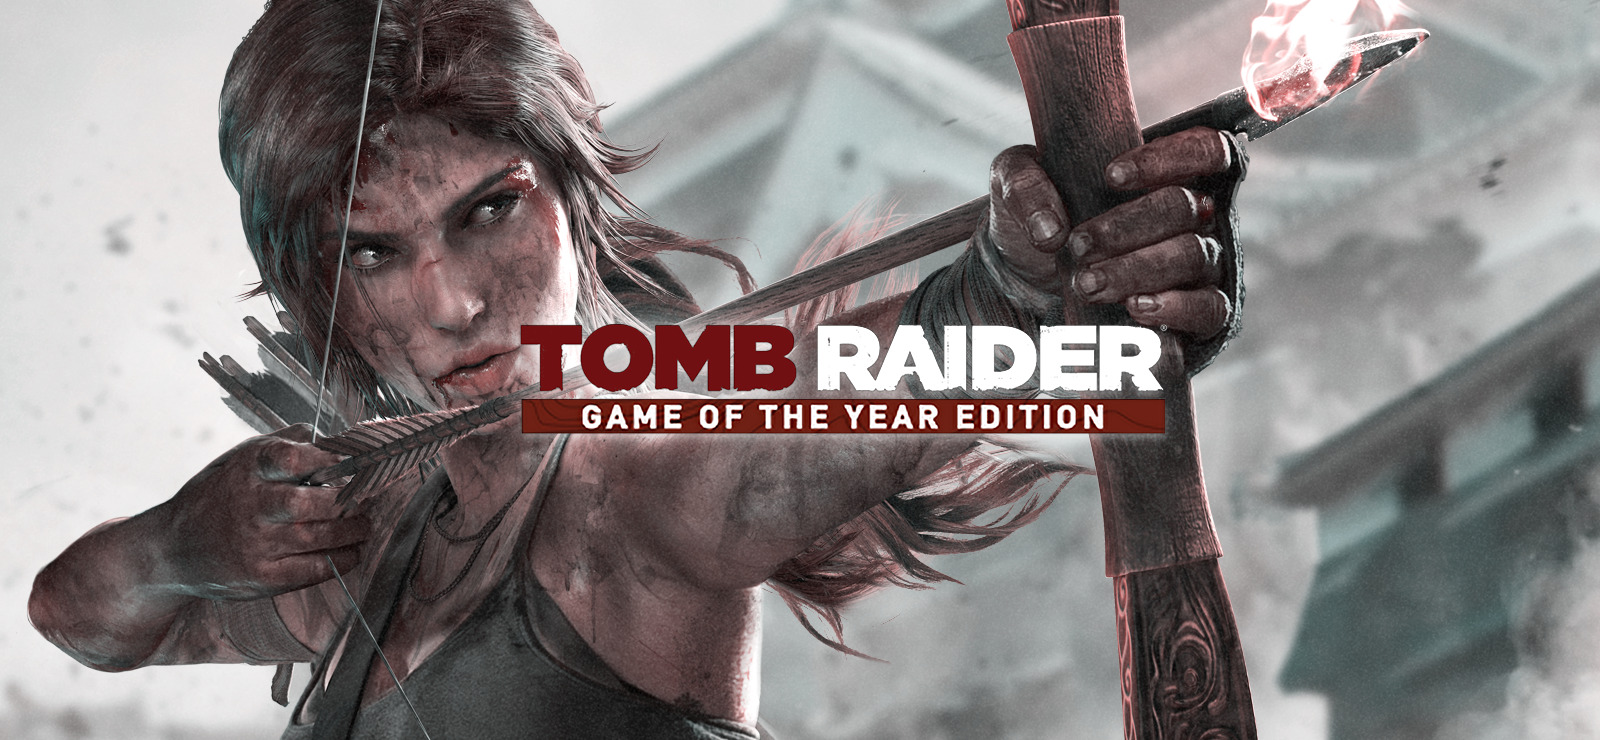 80% Tomb Raider GOTY on GOG.com